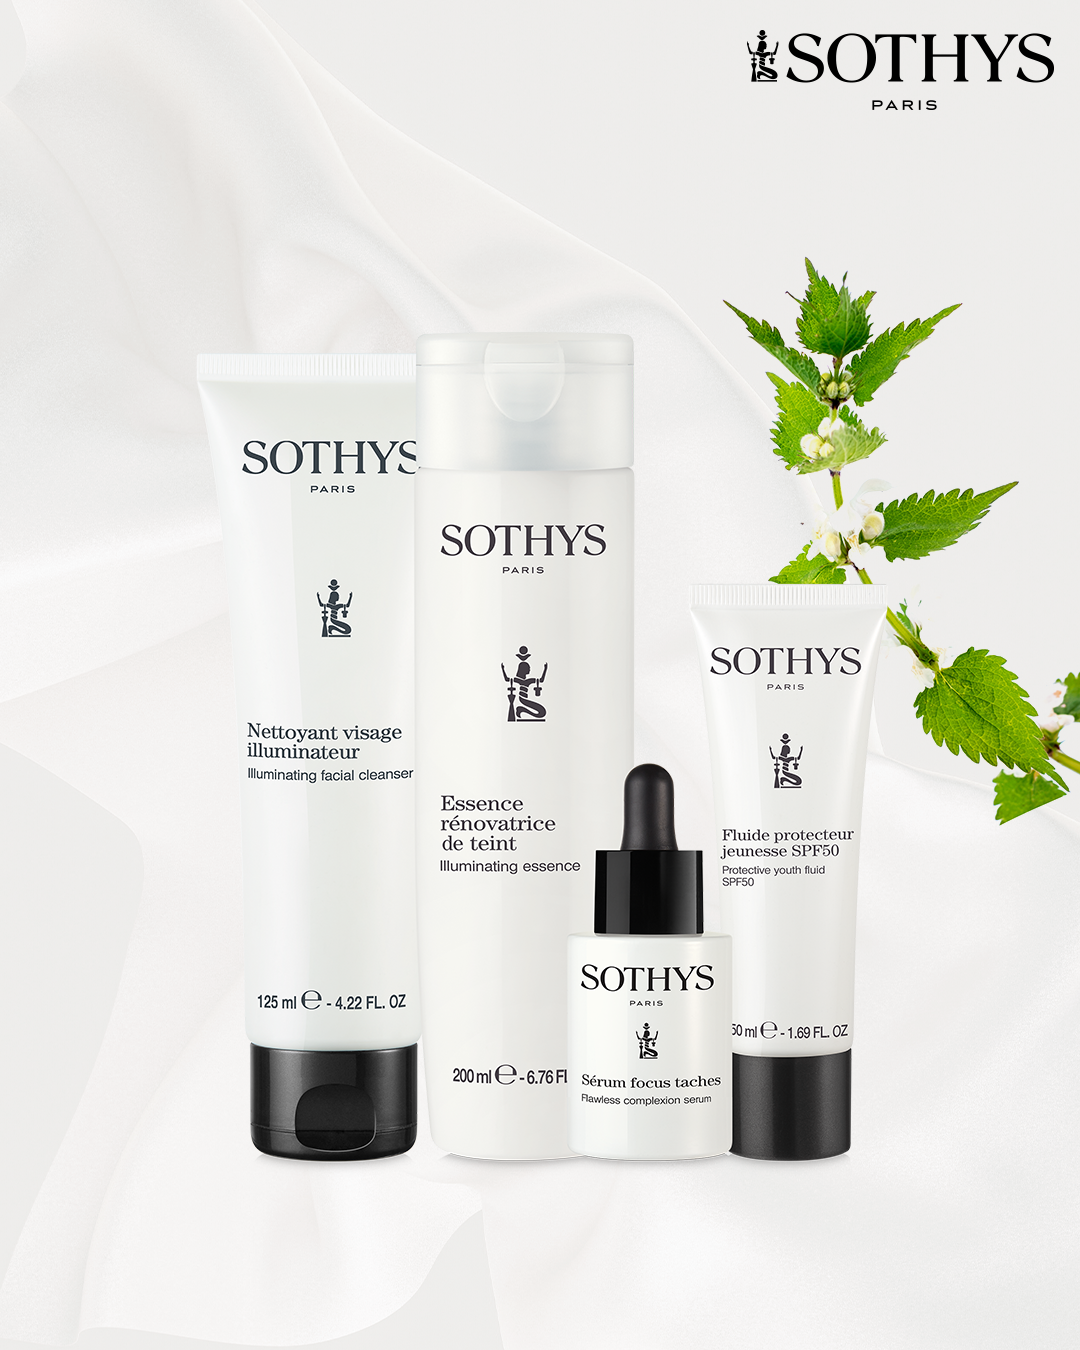 Sothys Sothys Coffret Duo Pigmentation: Serum + Creme Focus taches